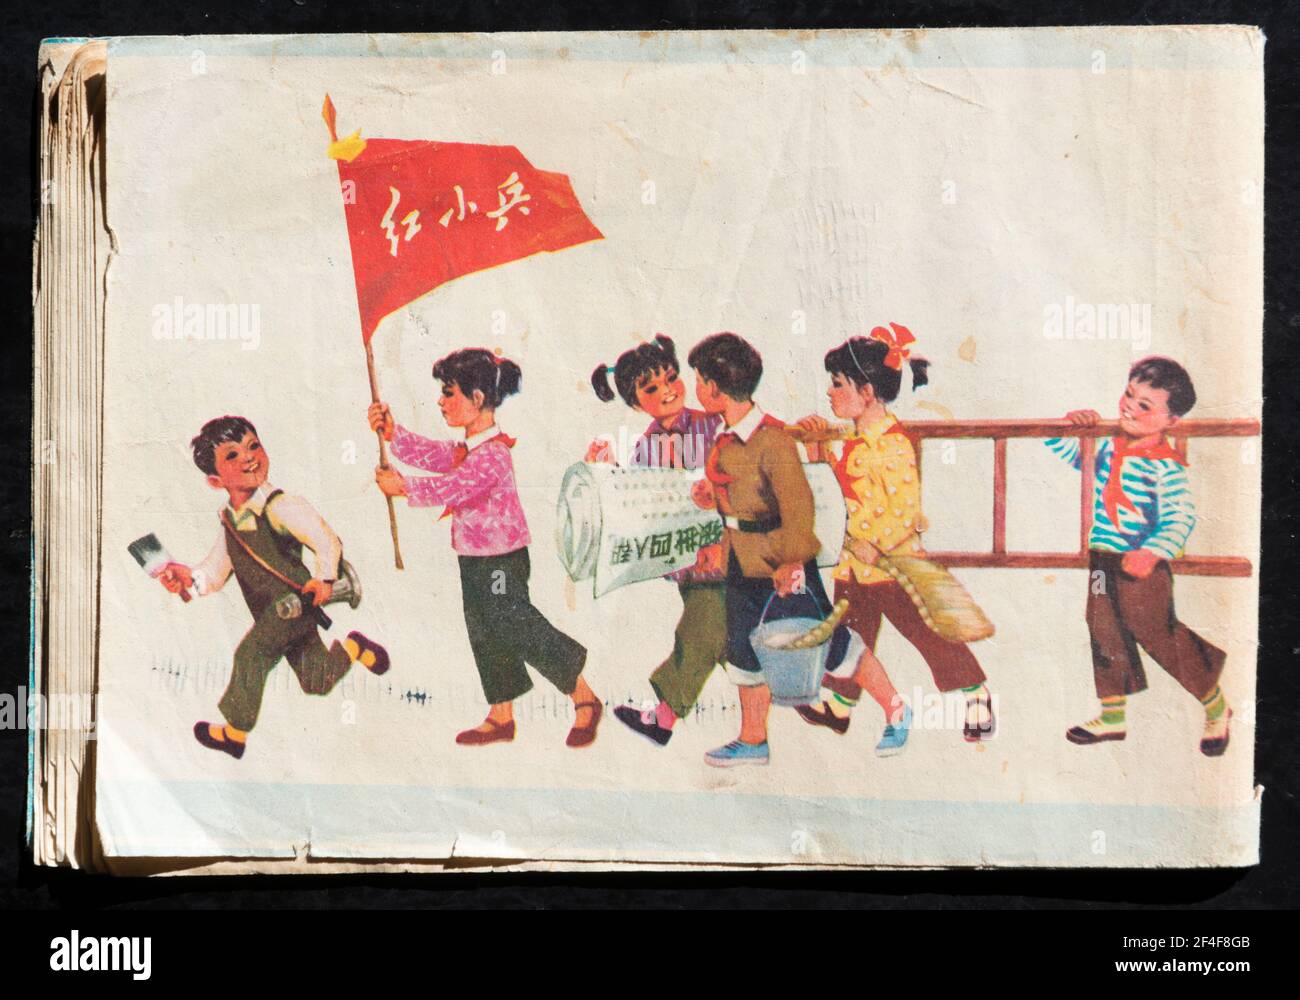 Une peinture sur la couverture arrière d'un magazine en 1977, avec un groupe de petits soldats rouges, va poster des affiches qui critiquent la bande des quatre. Banque D'Images